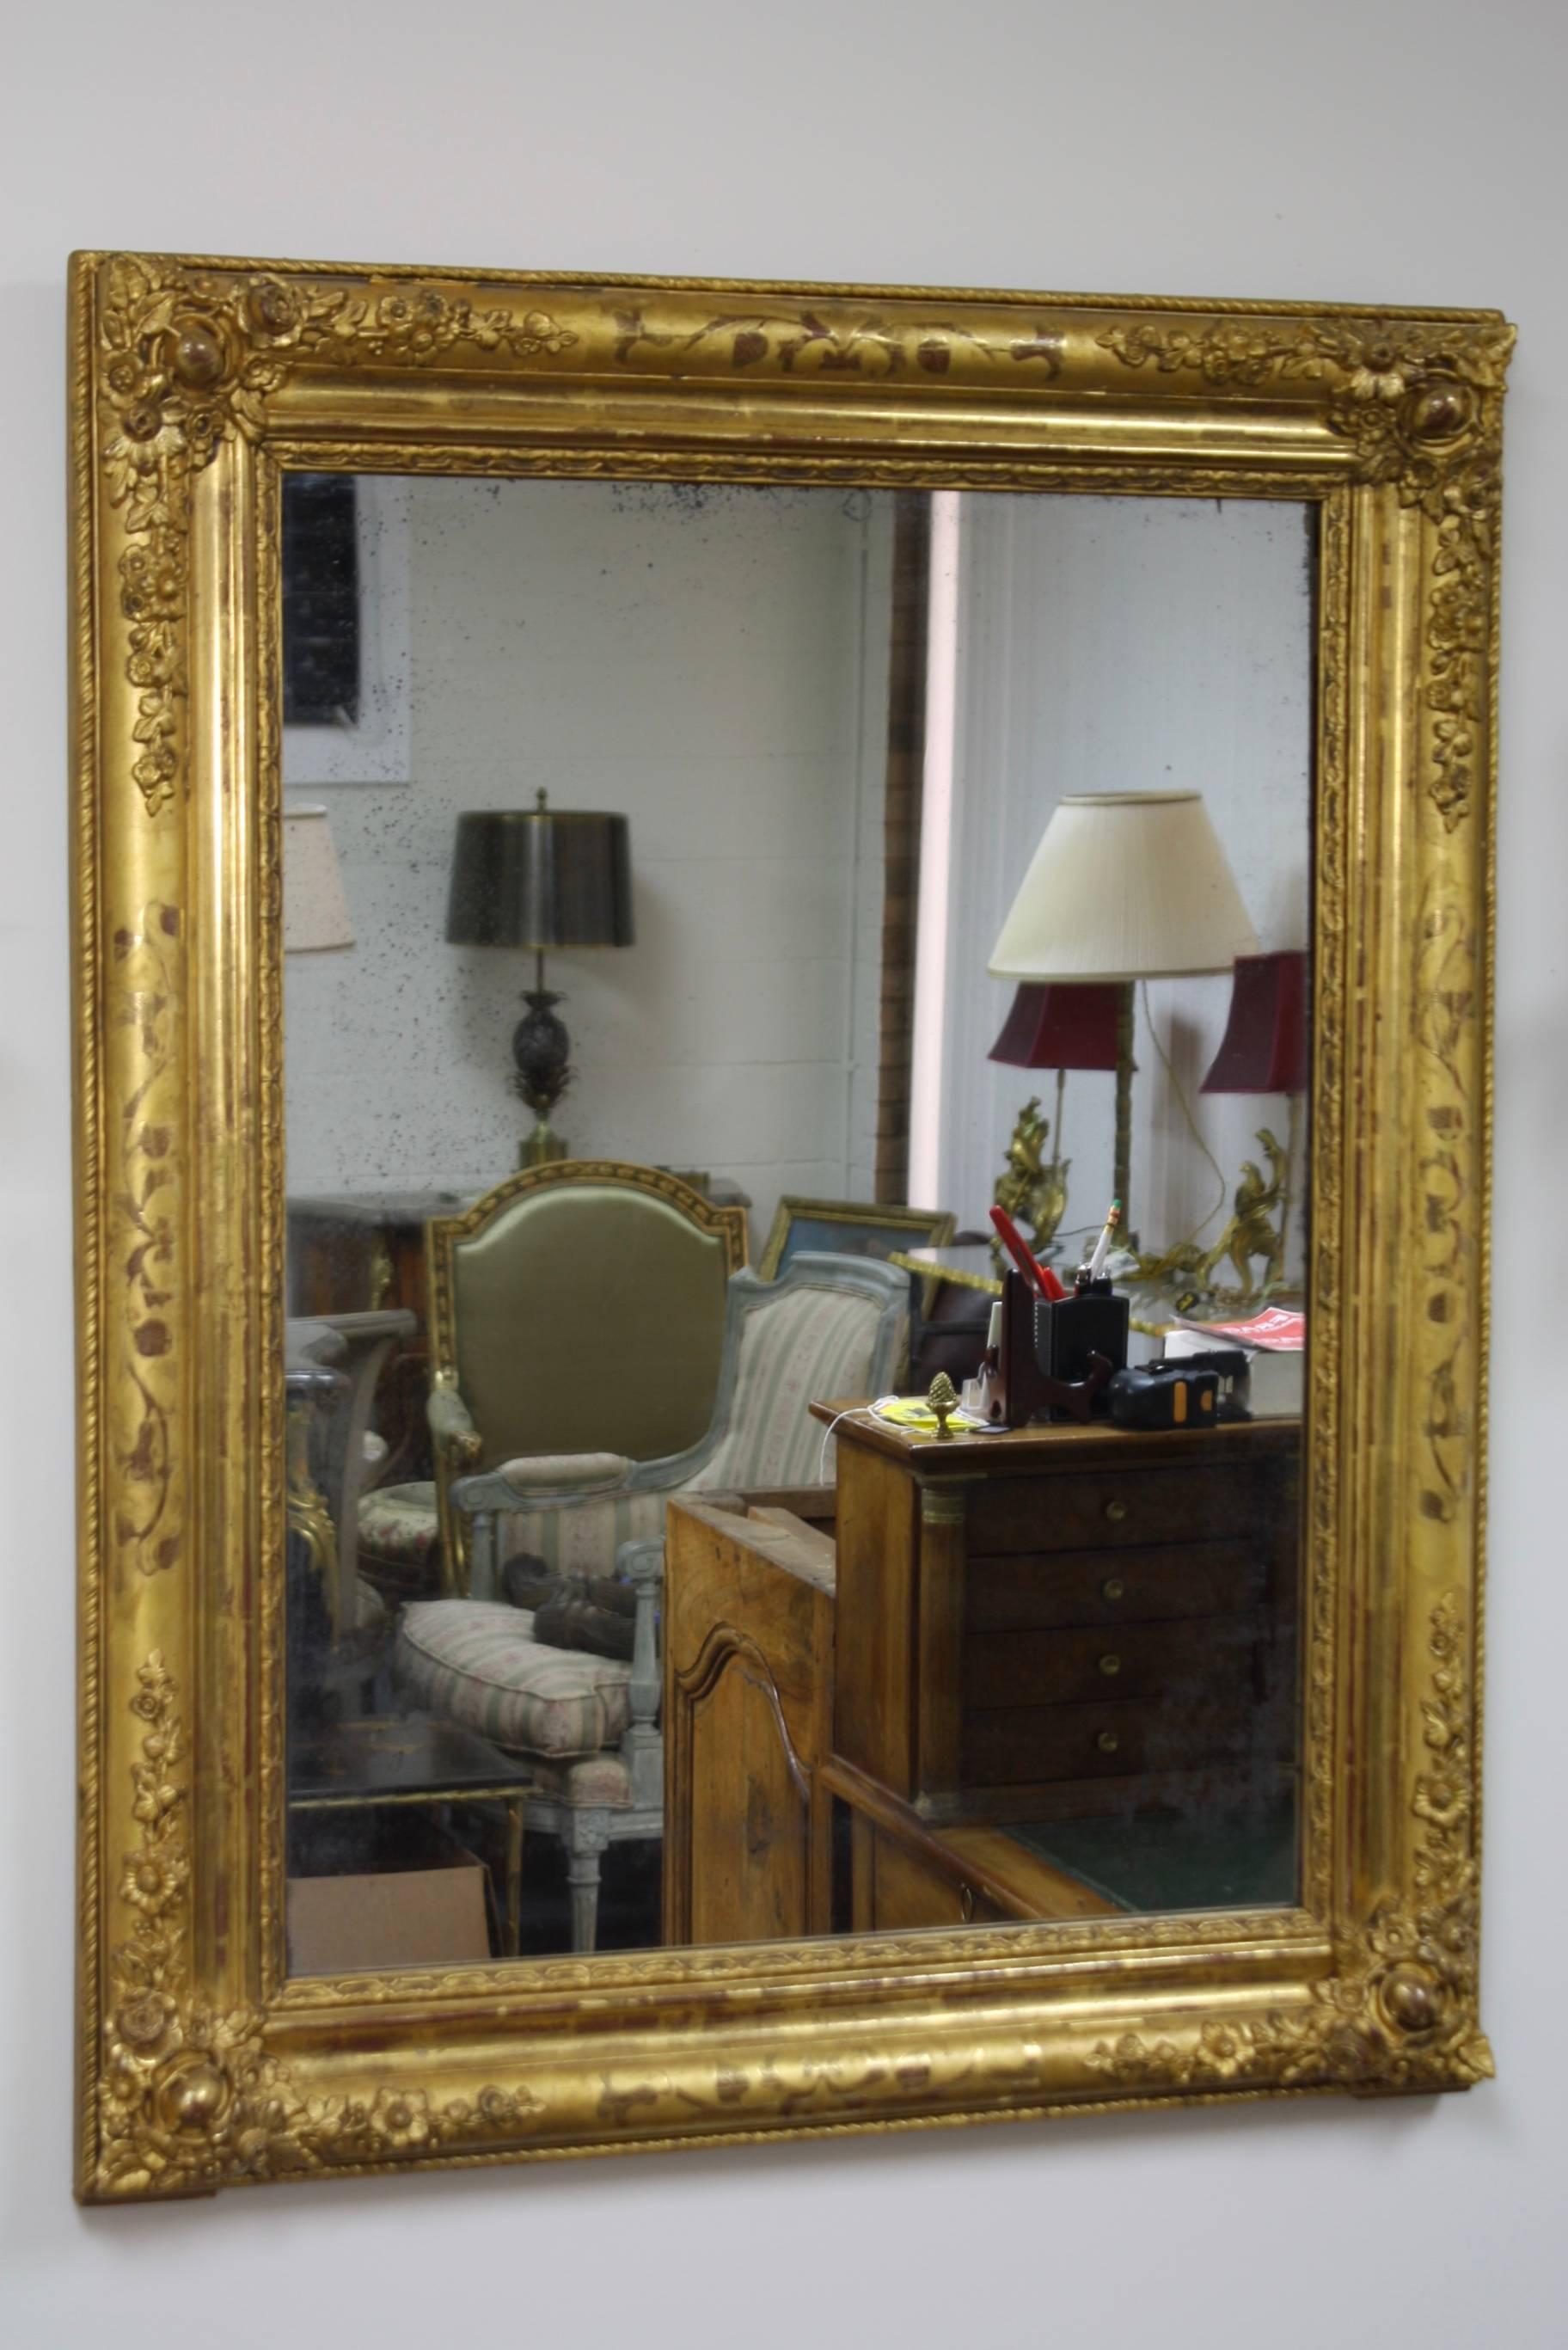 Magnifique miroir français en bois doré de la période Charles X, (vers 1830). Le miroir présente des détails floraux sculptés dans les coins et des motifs de vigne sur les côtés. Joli verre au mercure ancien qui montre son âge et pourrait être